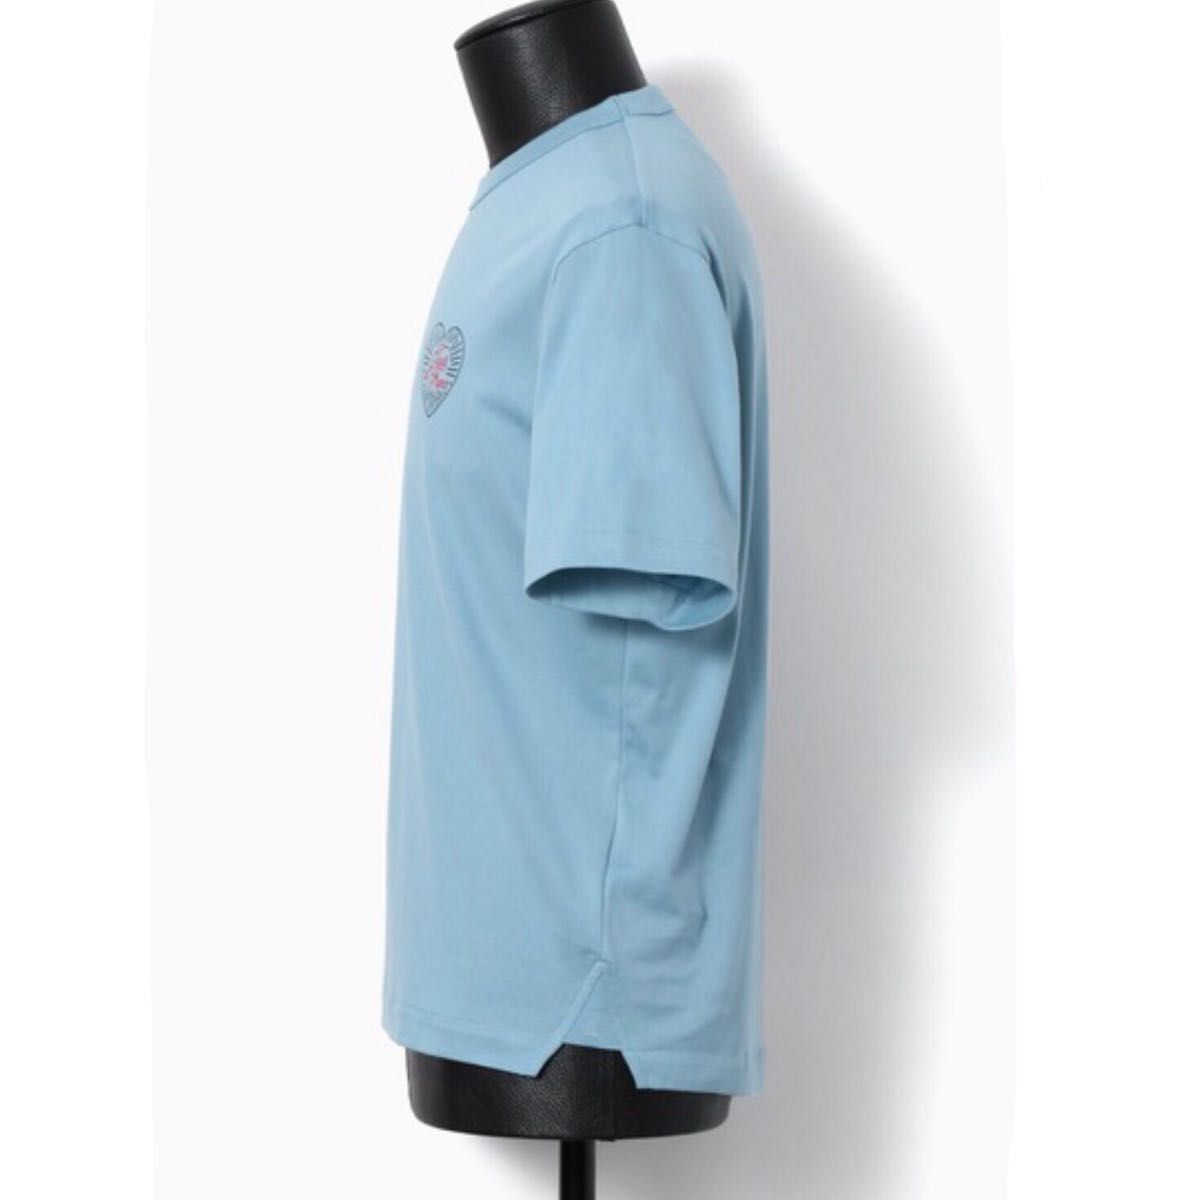 【新品タグ付】LANVIN ランバン コレクション フランス メンズ Tシャツ Lサイズ